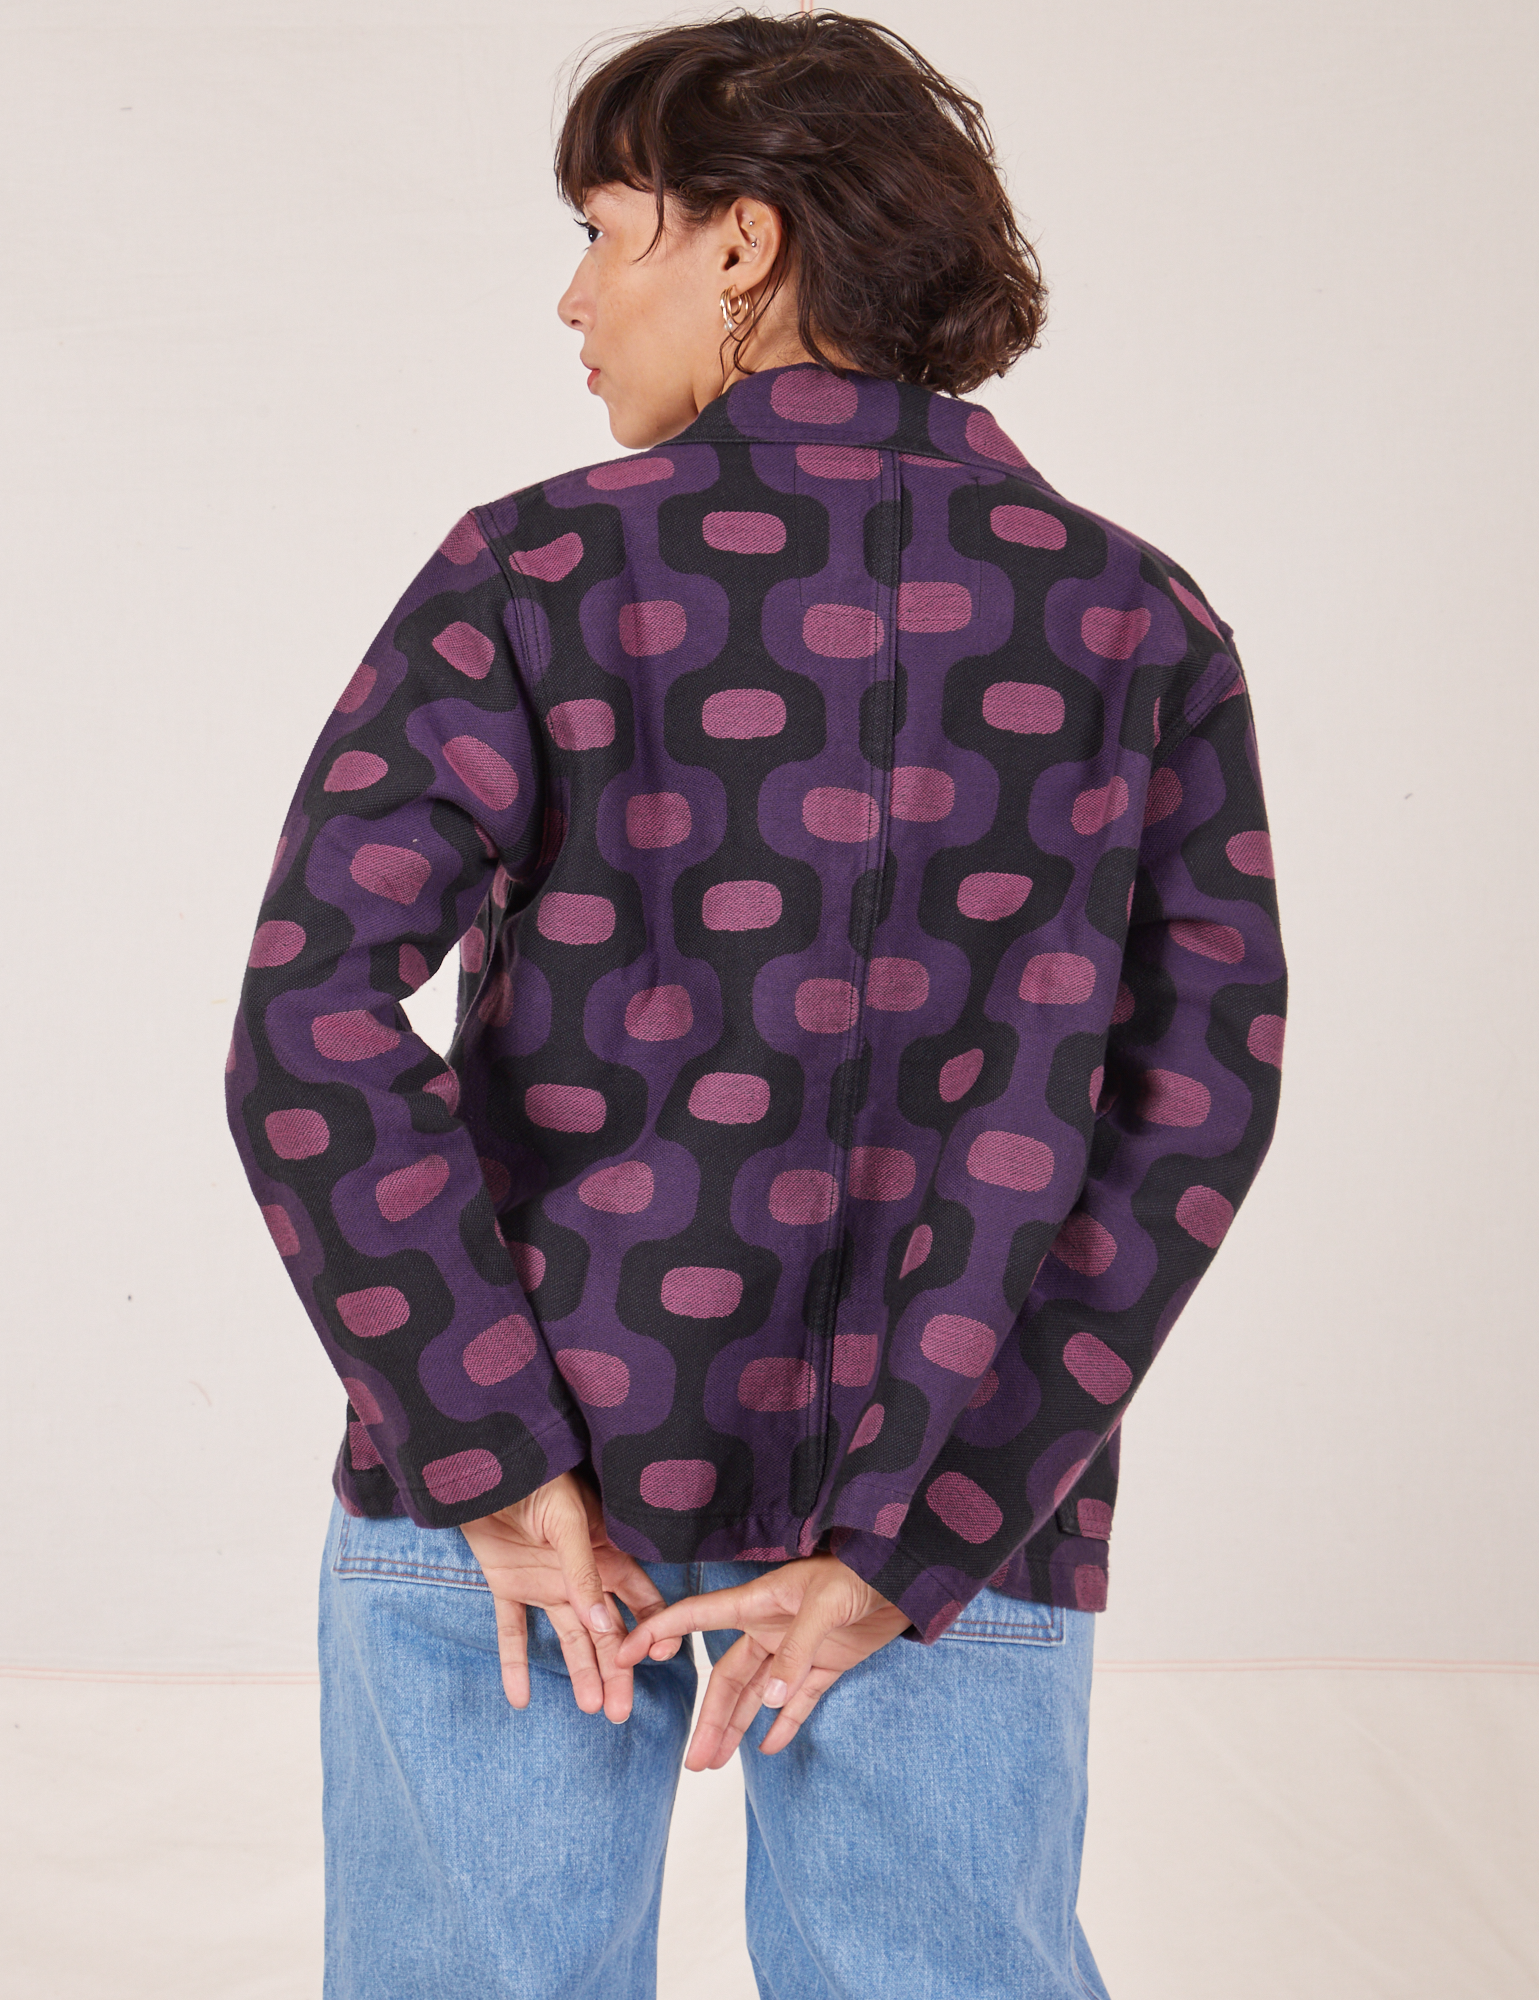 Back view of  Purple Tile Jacquard Work Jacket on Tiara